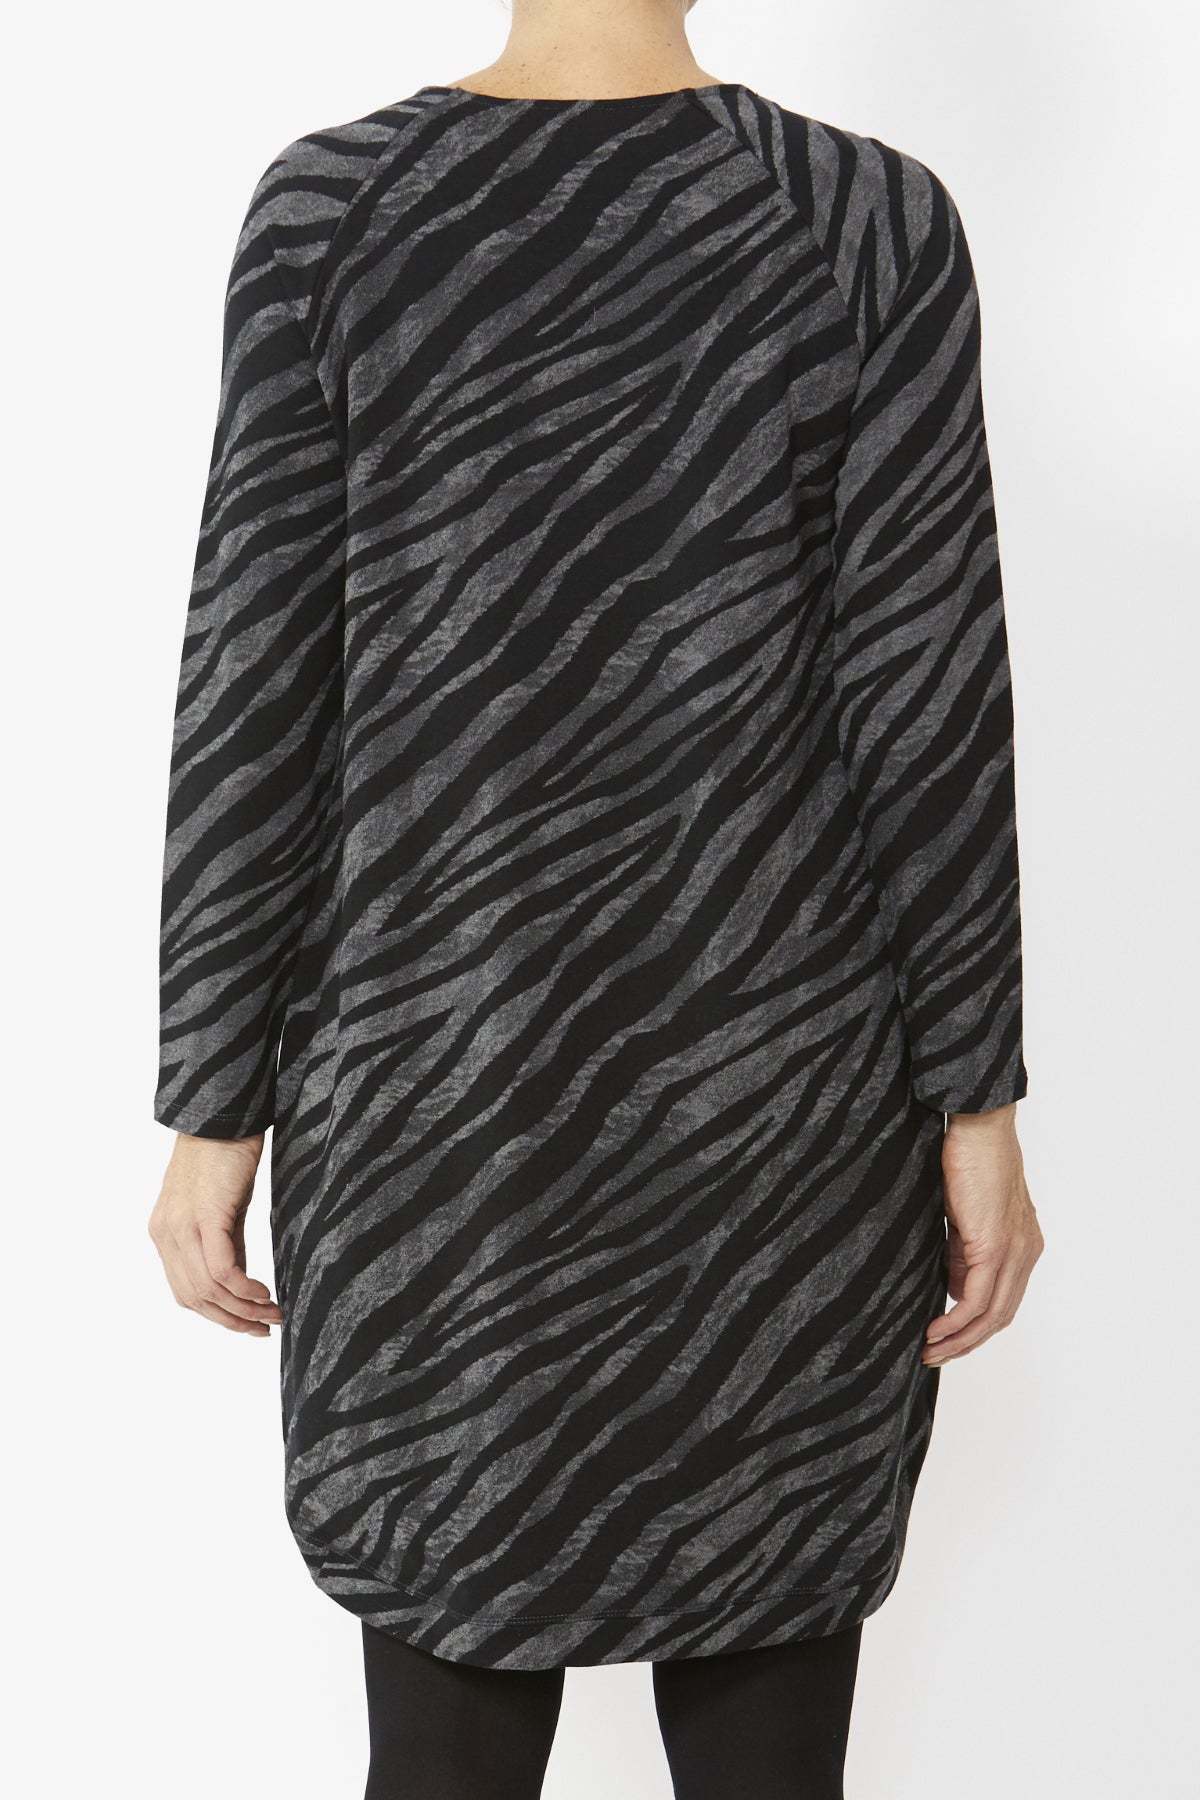 Women's Zebra Jersey Dress in Print